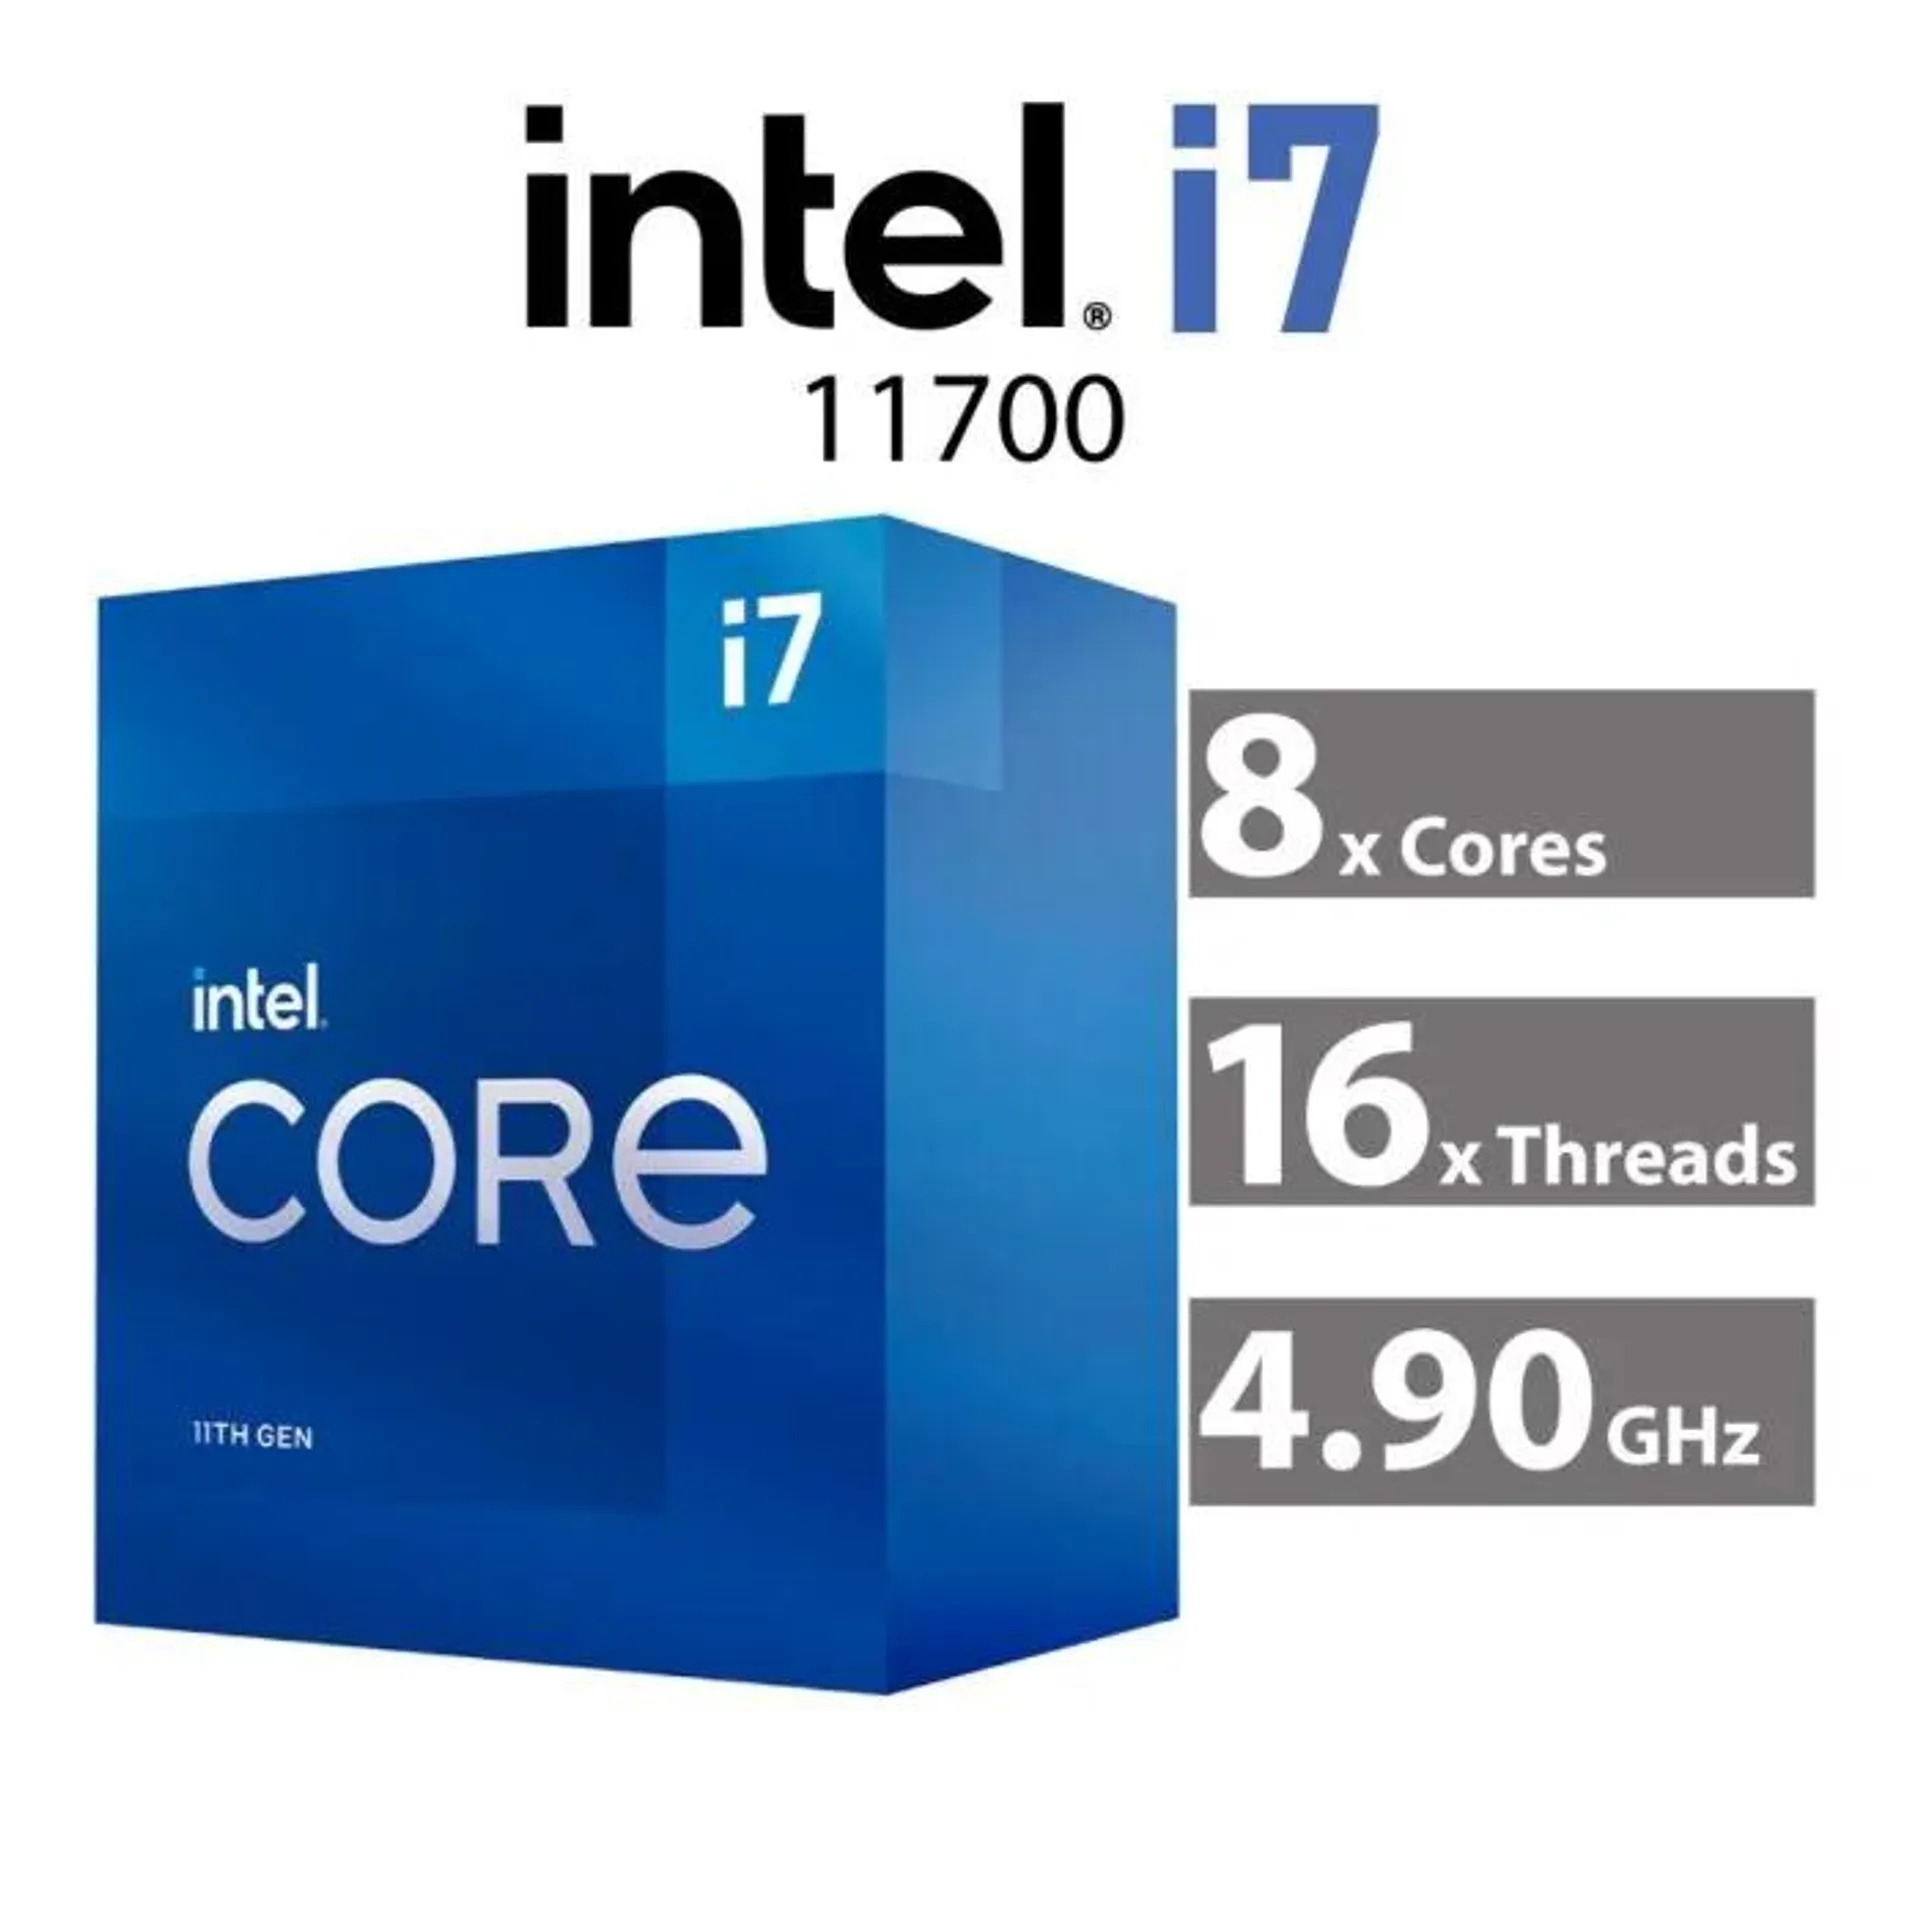 Intel Core i7-11700 Rocket Lake 8-Core 2.50GHz LGA1200 65W BX8070811700 Desktop Processor